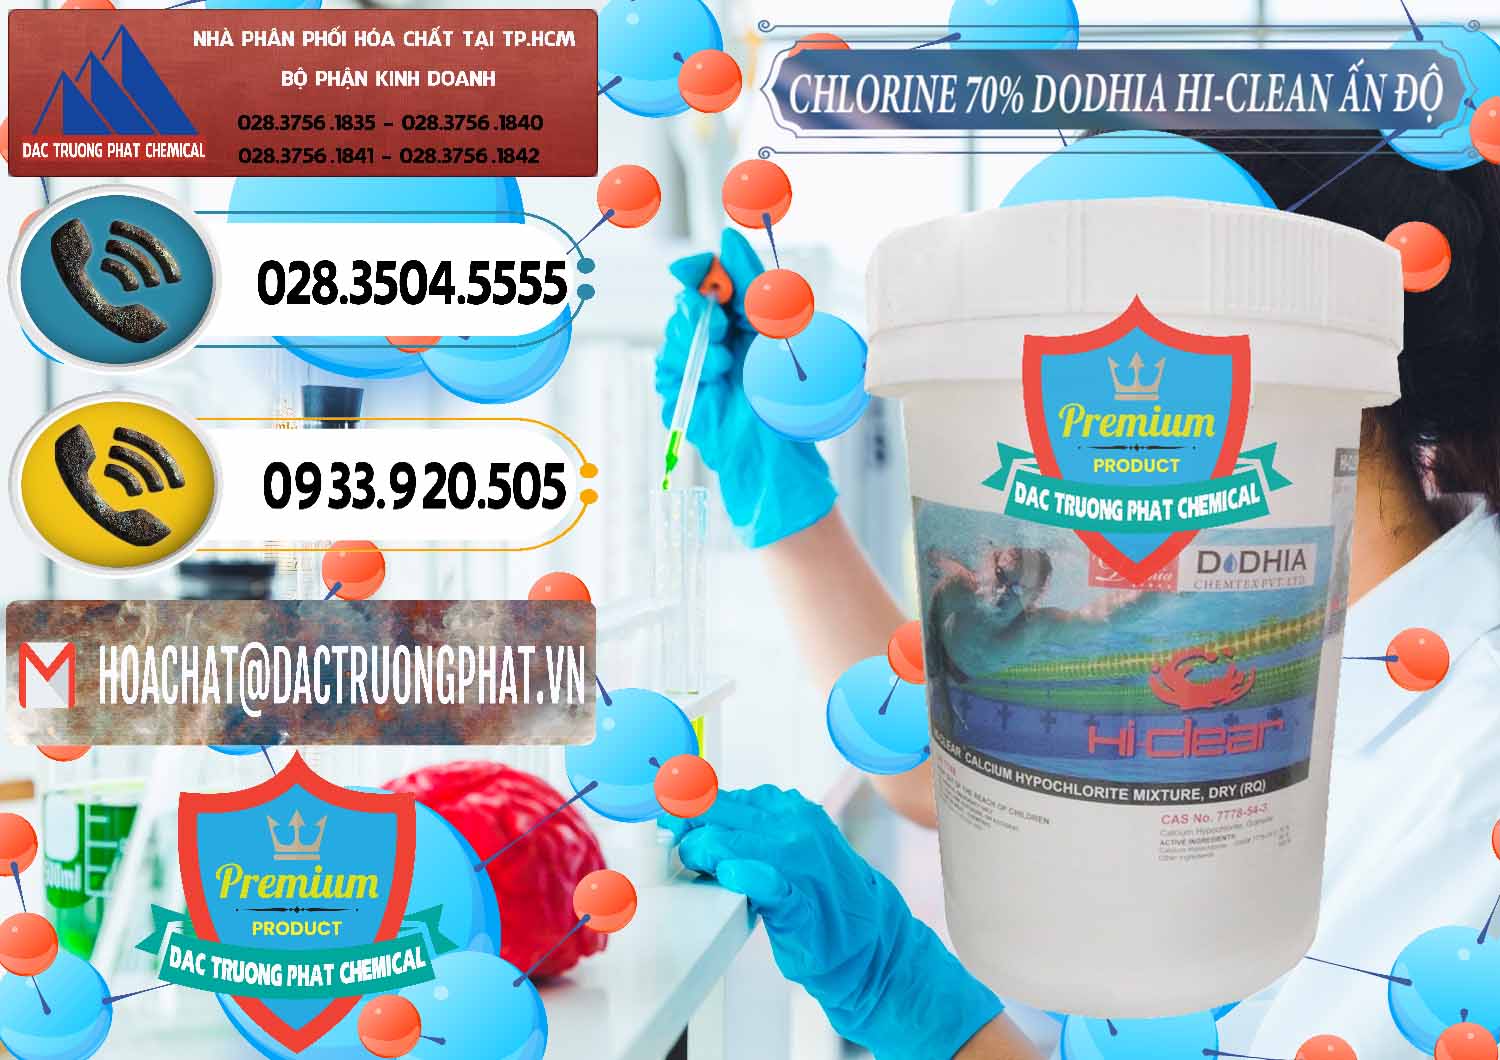 Nơi cung ứng ( bán ) Chlorine – Clorin 70% Dodhia Hi-Clean Ấn Độ India - 0214 - Đơn vị chuyên cung cấp và bán hóa chất tại TP.HCM - hoachatdetnhuom.vn